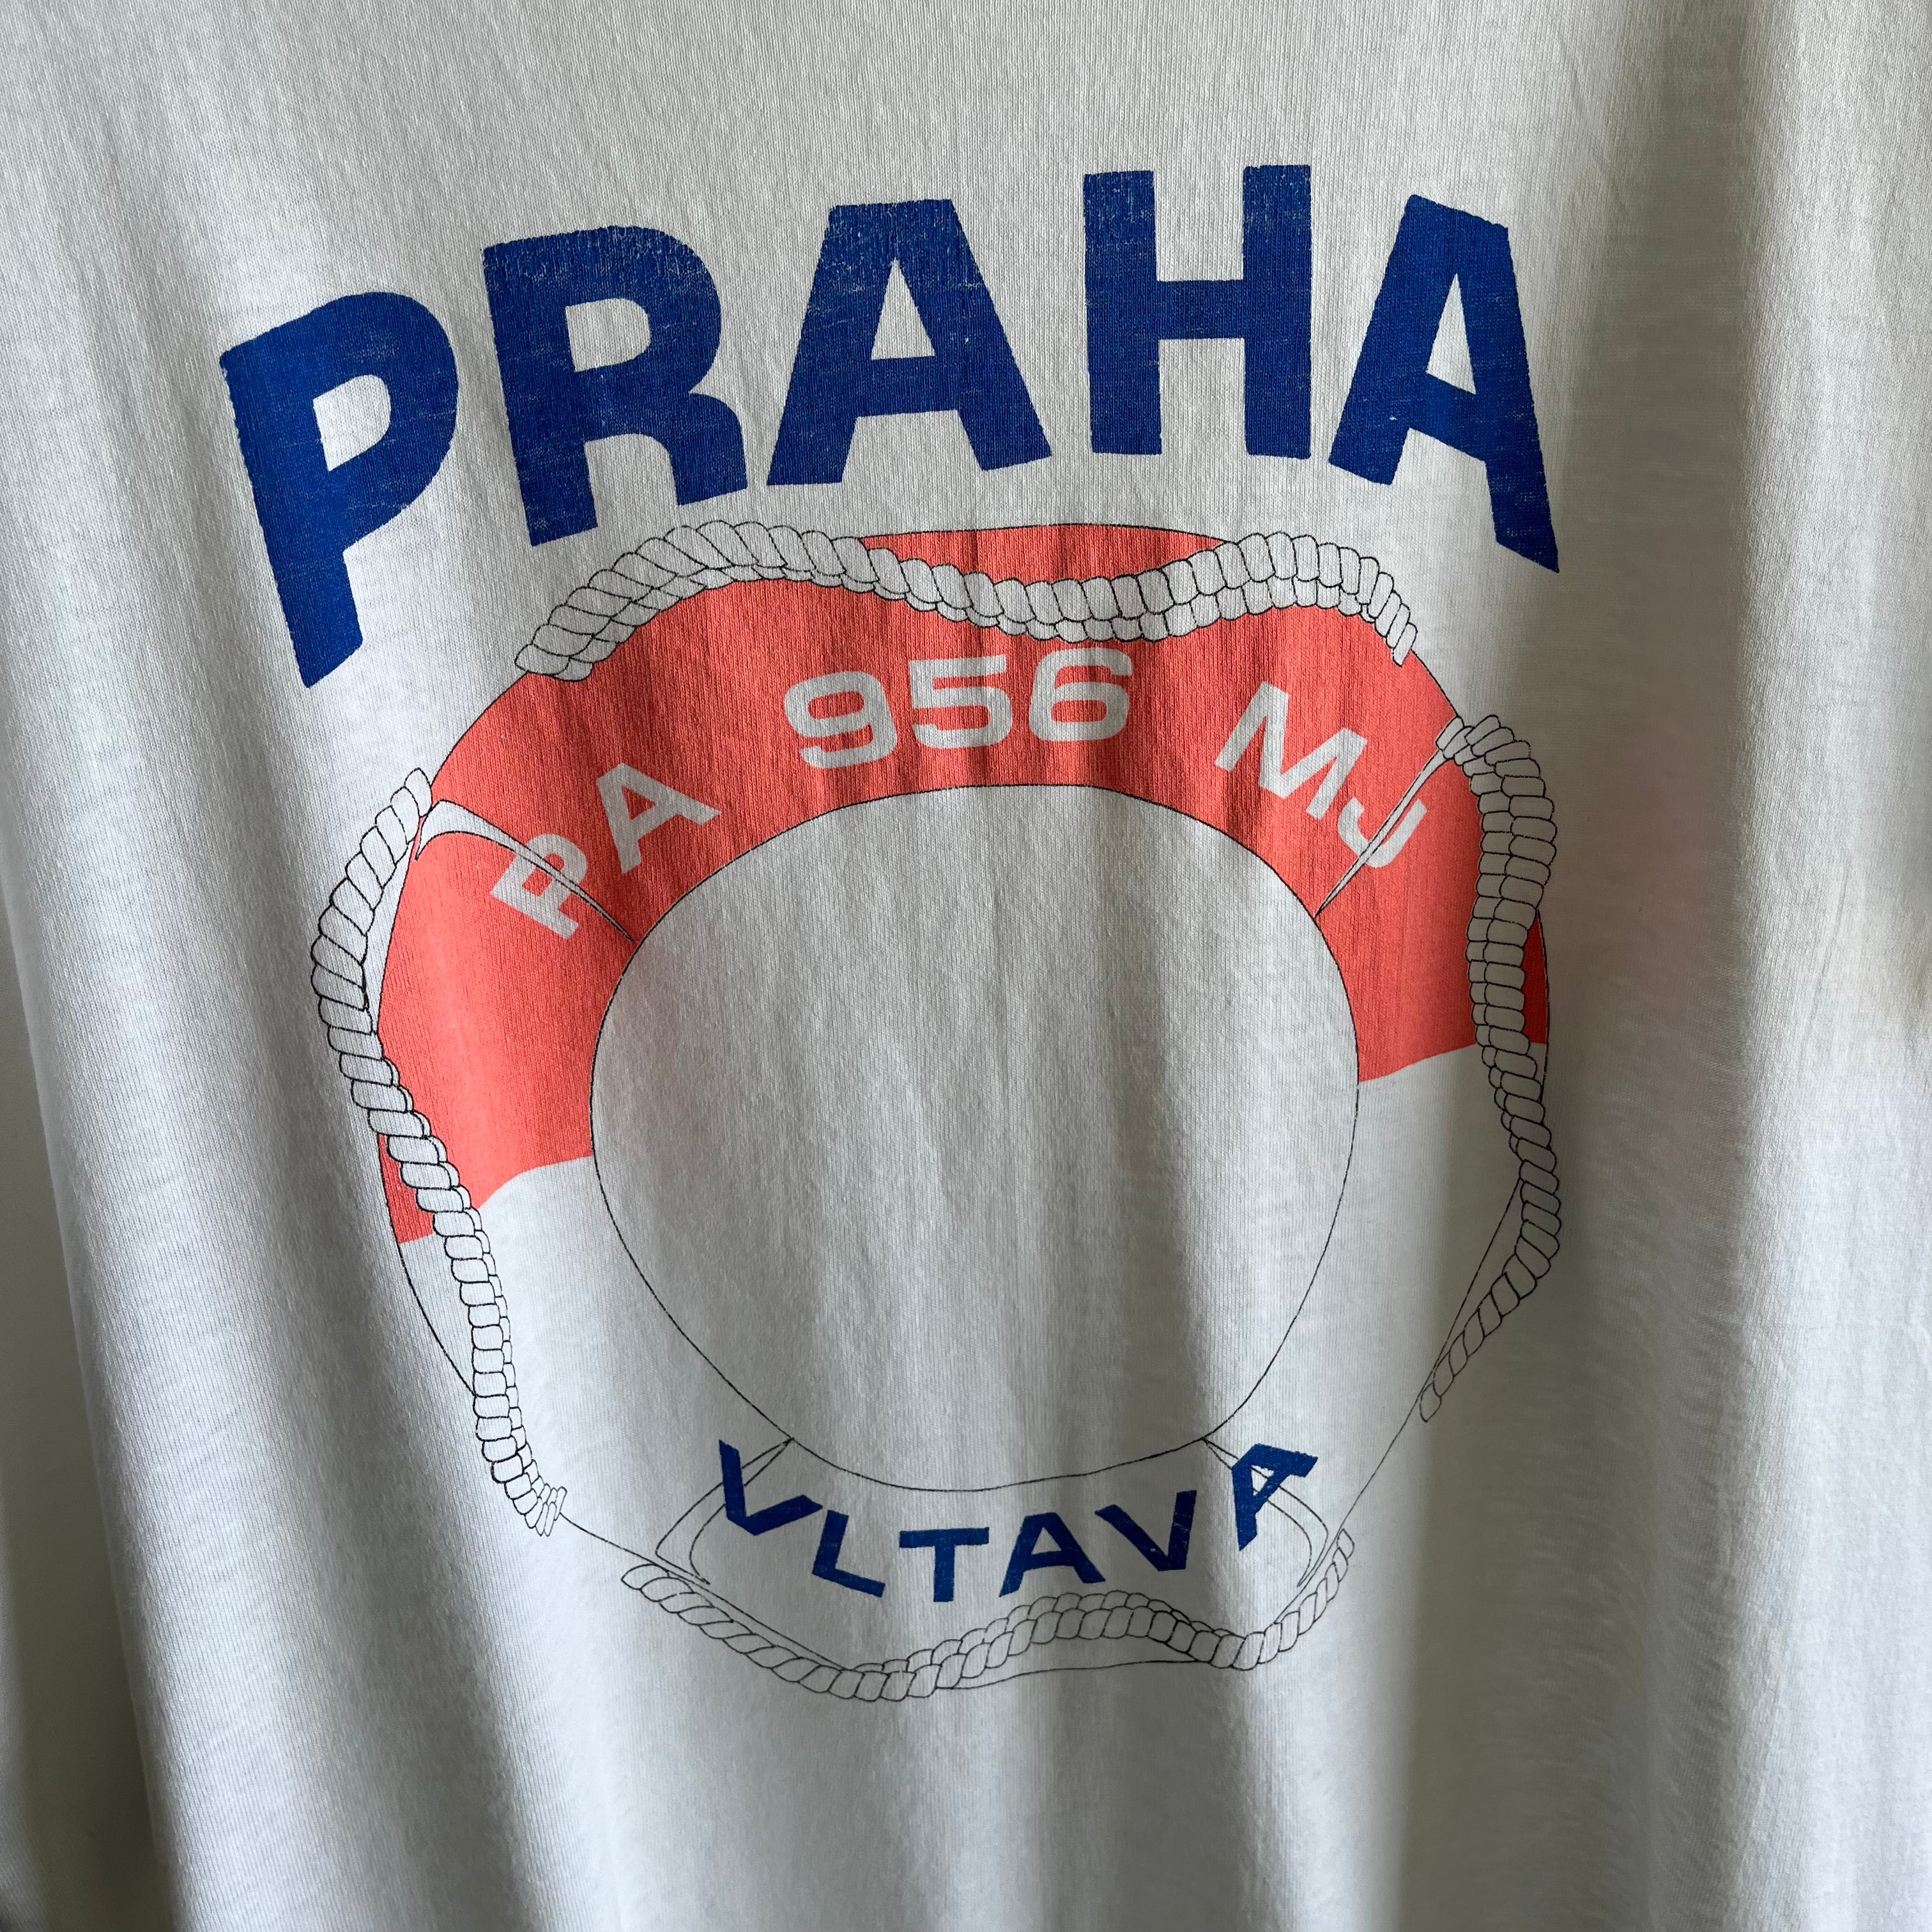 1980s Prague Tourist T-Shirt on a USA Made Screen Stars Tee